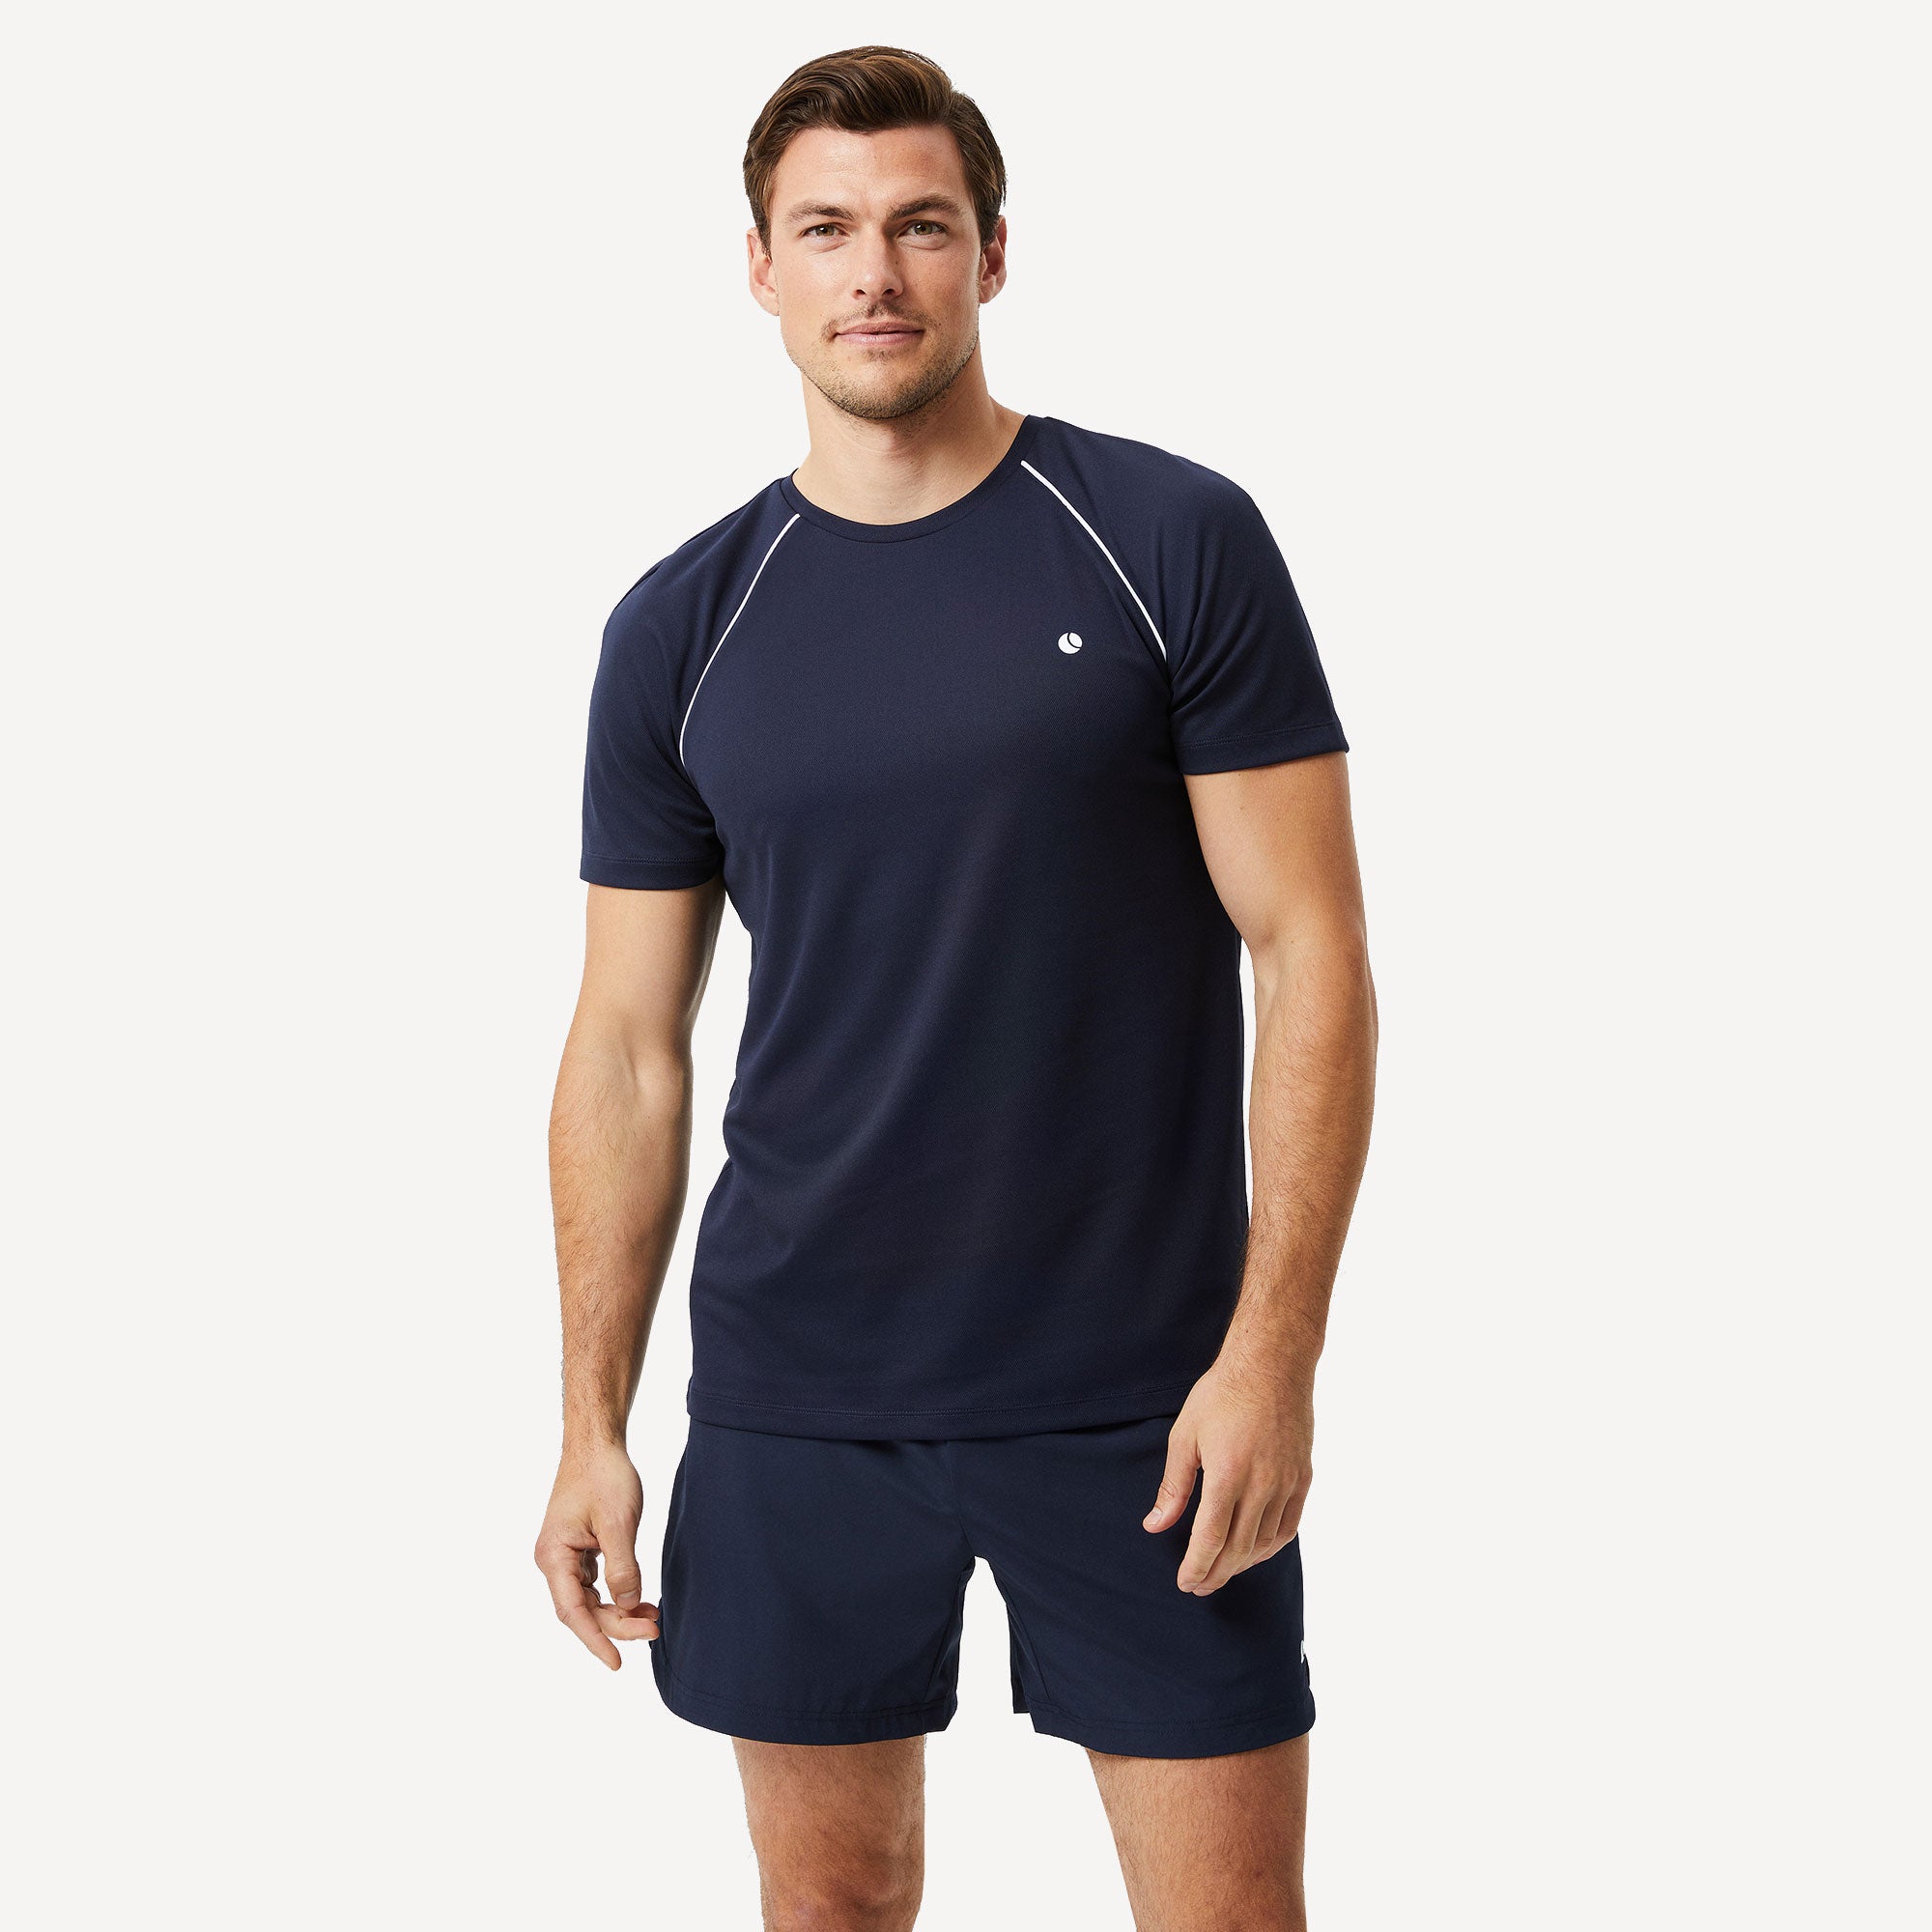 Björn Borg Ace Racquet Men's Tennis Shirt - Dark Blue (1)